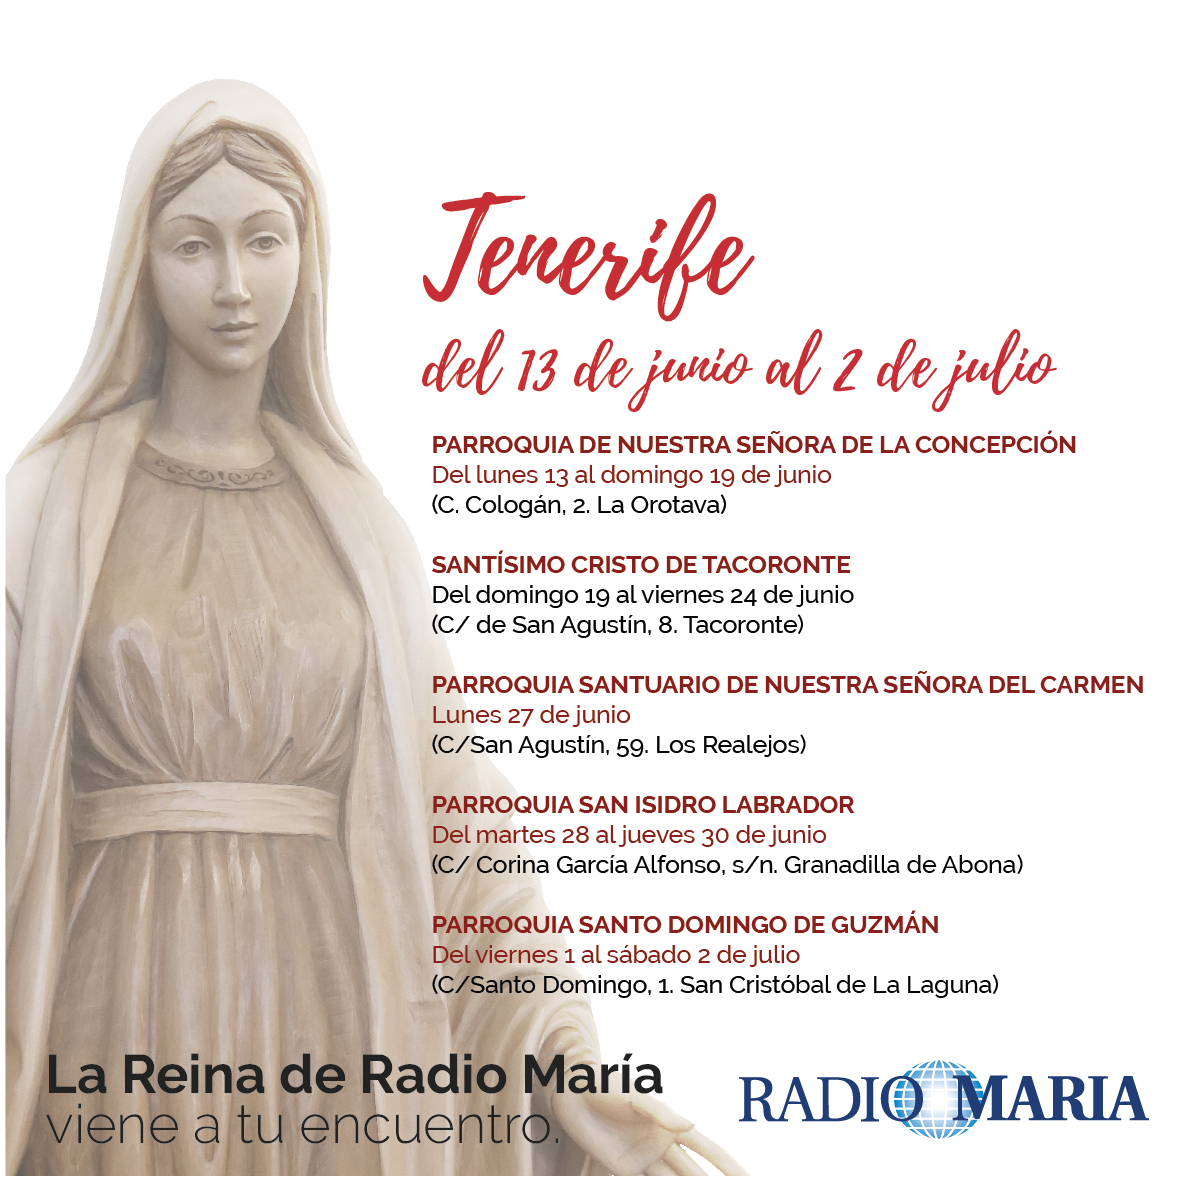 La Reina de Radio María visita Tenerife